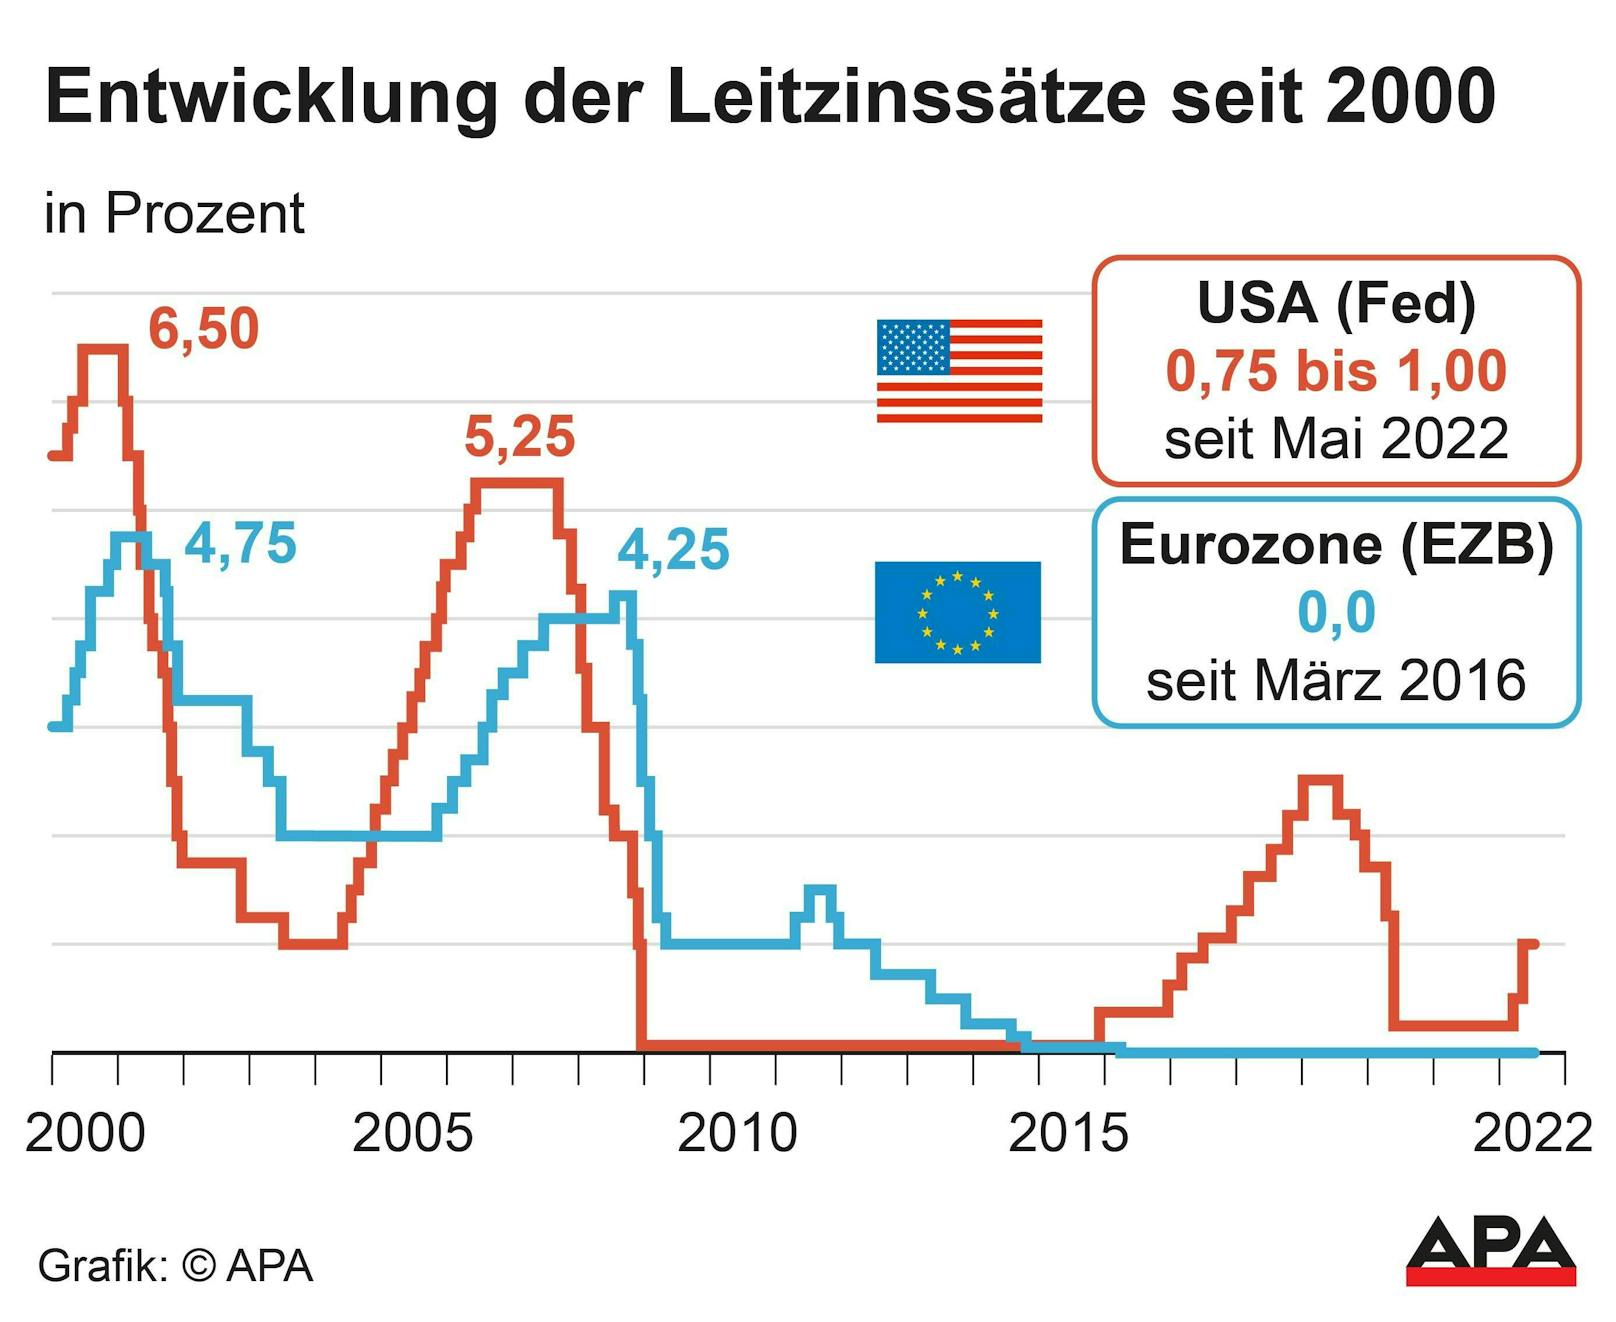 Leitzinssätze in den USA (Fed) und Eurozone (EZB) seit dem Jahr 2000.